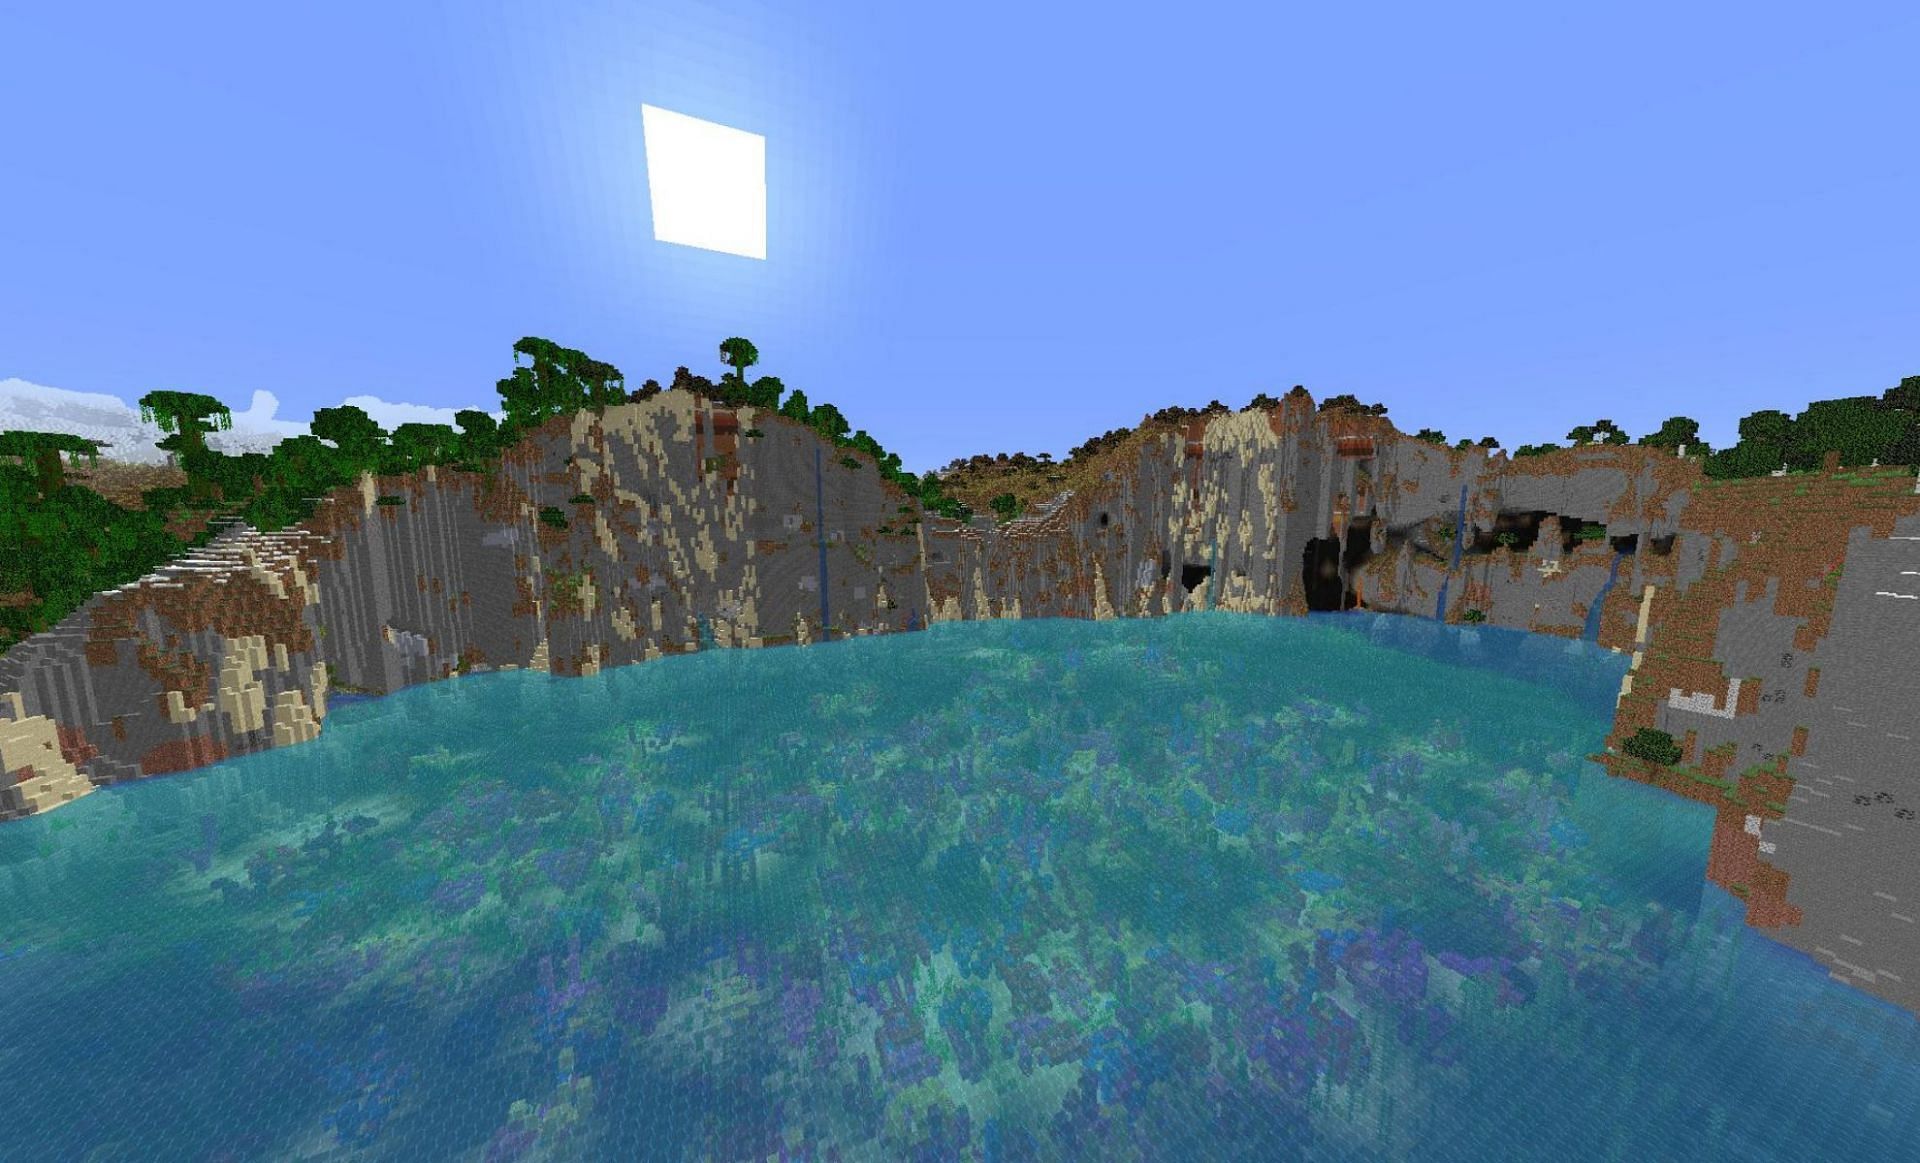 An example of sheer cliffs (Image via u/Matt_o_lantern on Reddit)